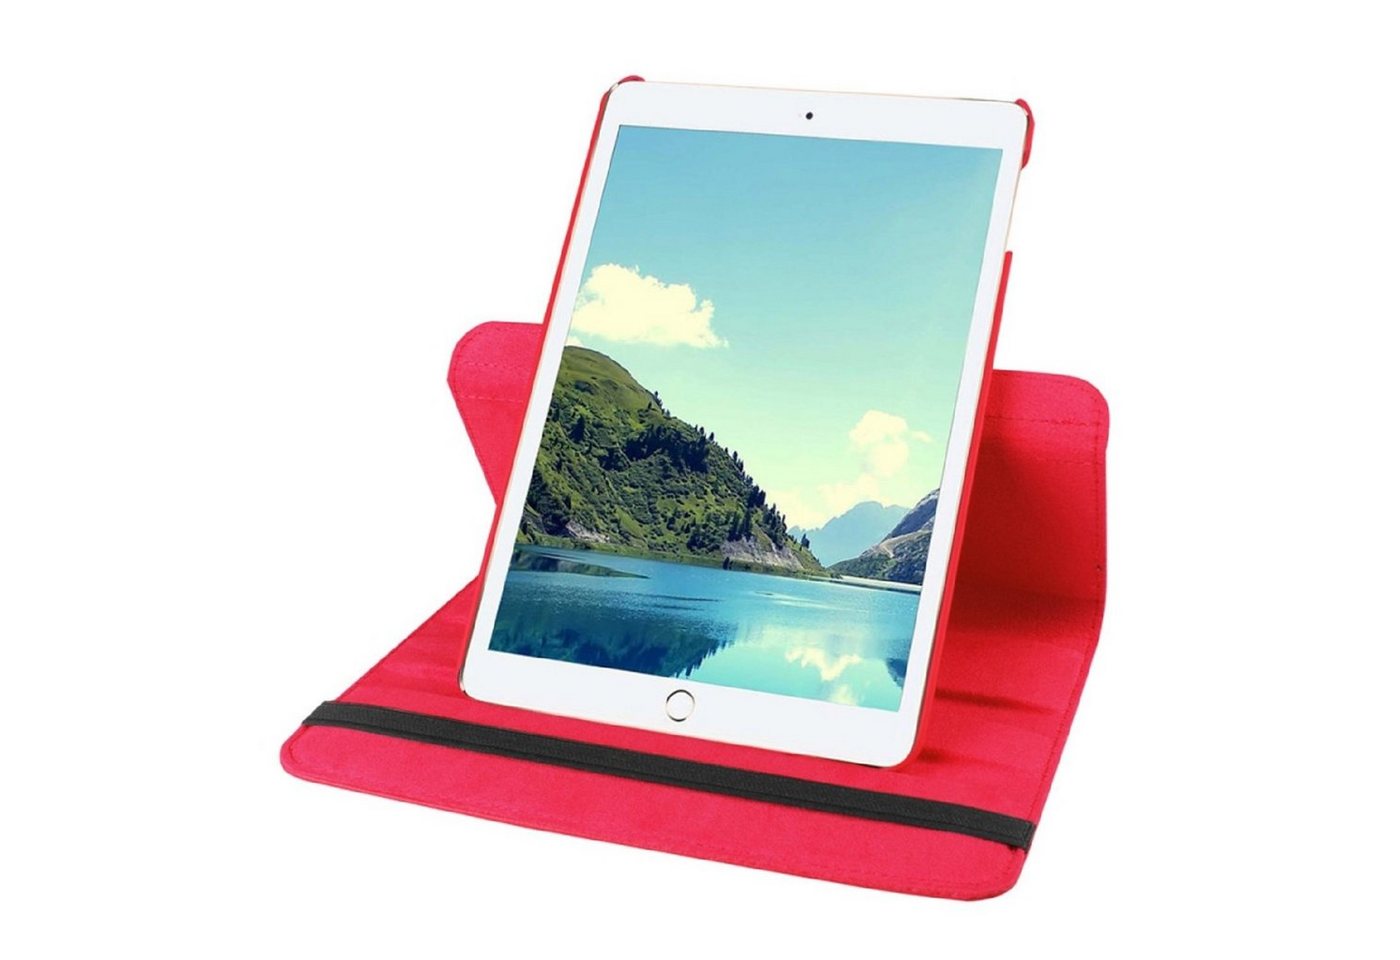 Protectorking Tablet-Hülle Schutzhülle für iPad Mini 1/2/3 Tablet Hülle Schutz Tasche Case Cover 8,3 Zoll, Tablet Schutzhülle mit Wakeup/Sleep - Funktion, 360° Drehbar von Protectorking